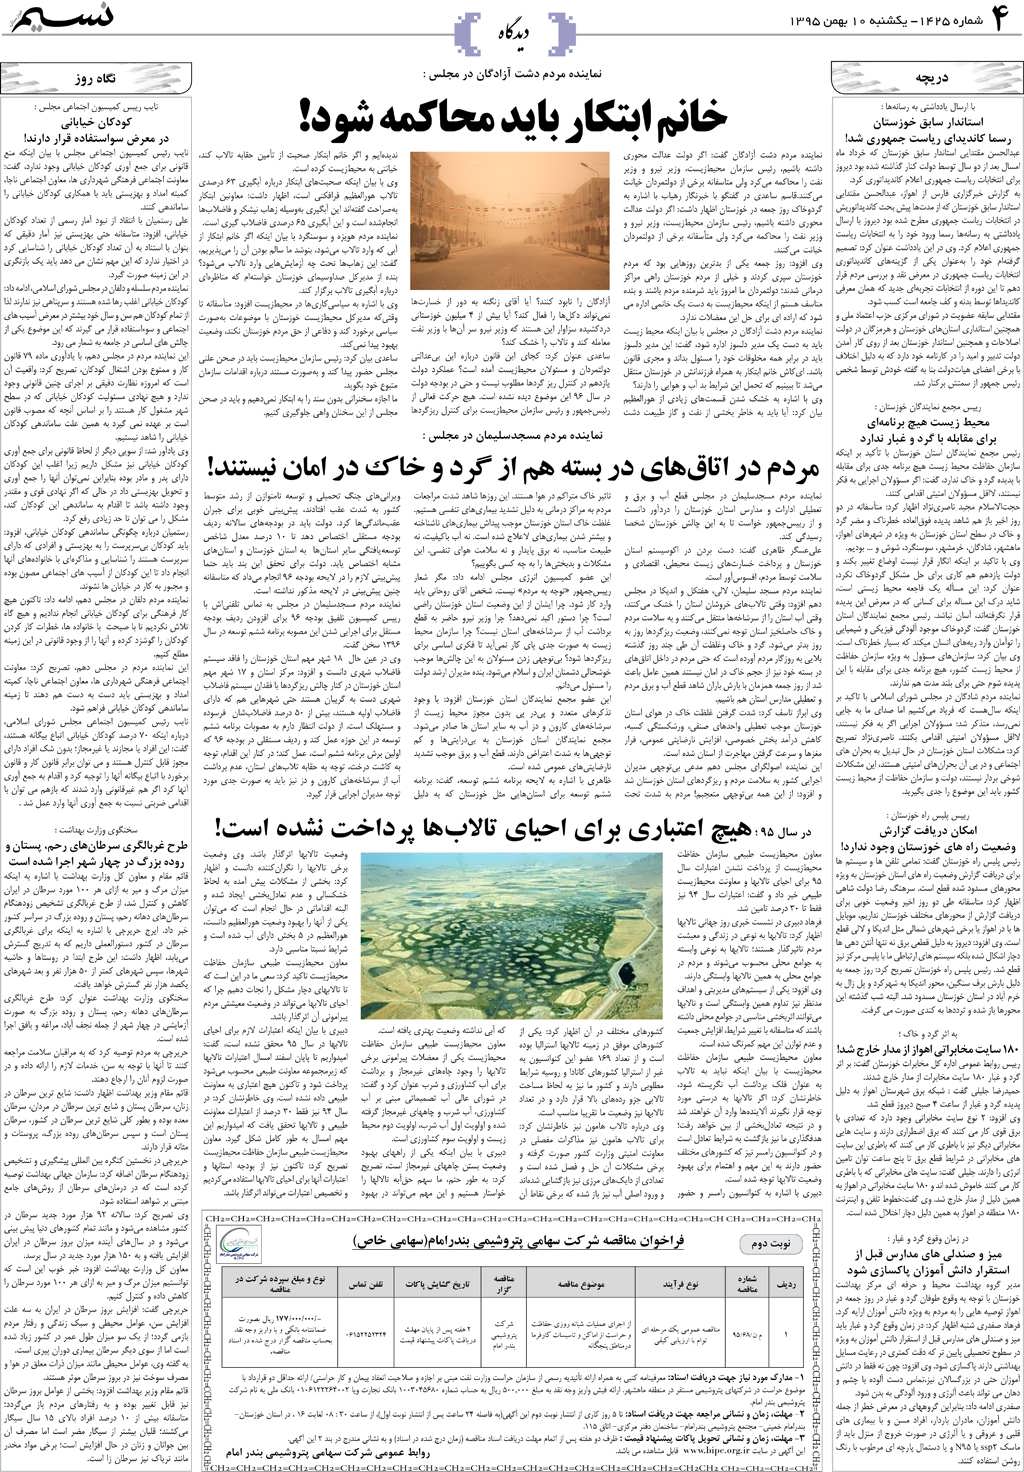 صفحه دیدگاه روزنامه نسیم شماره 1425